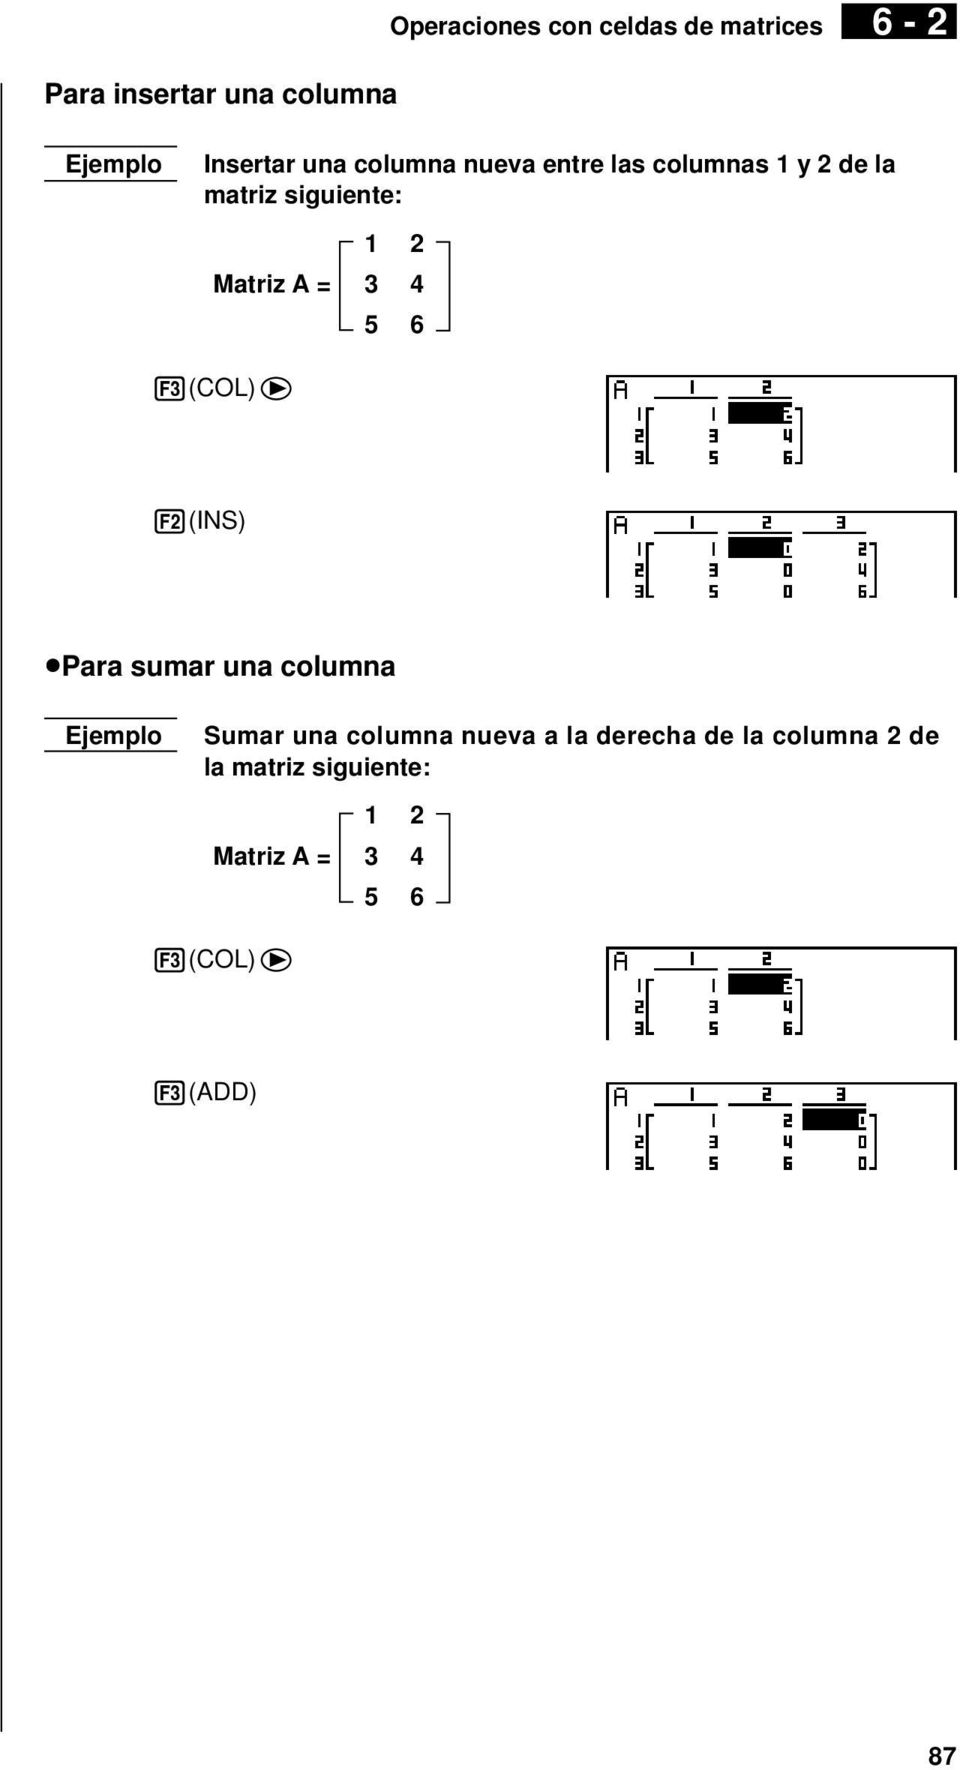 siguiente: 3(COL)e 2(INS) upara sumar una columna Sumar una columna